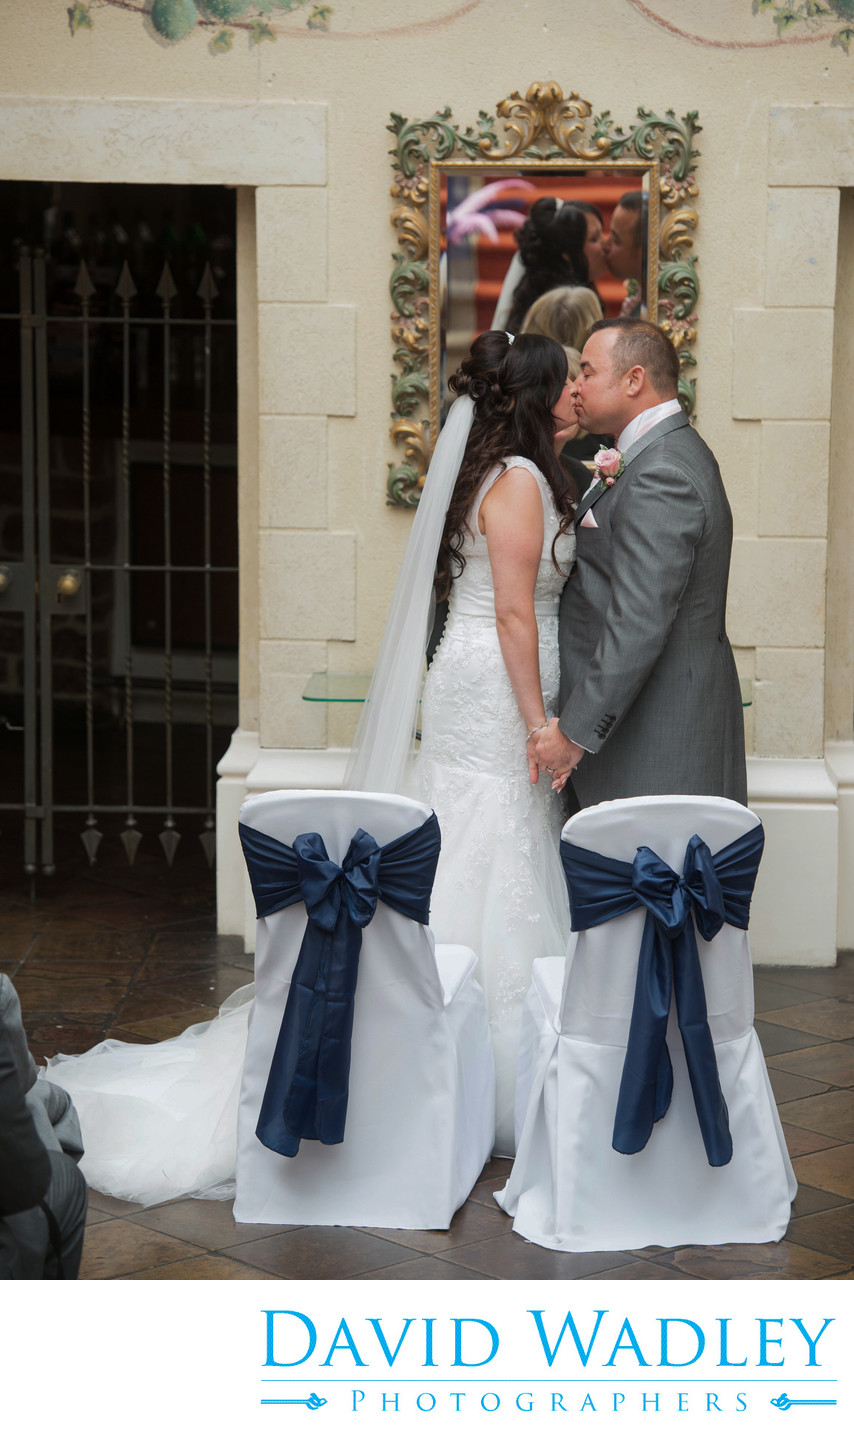 A kiss seals their wedding at Nailcote Hall.